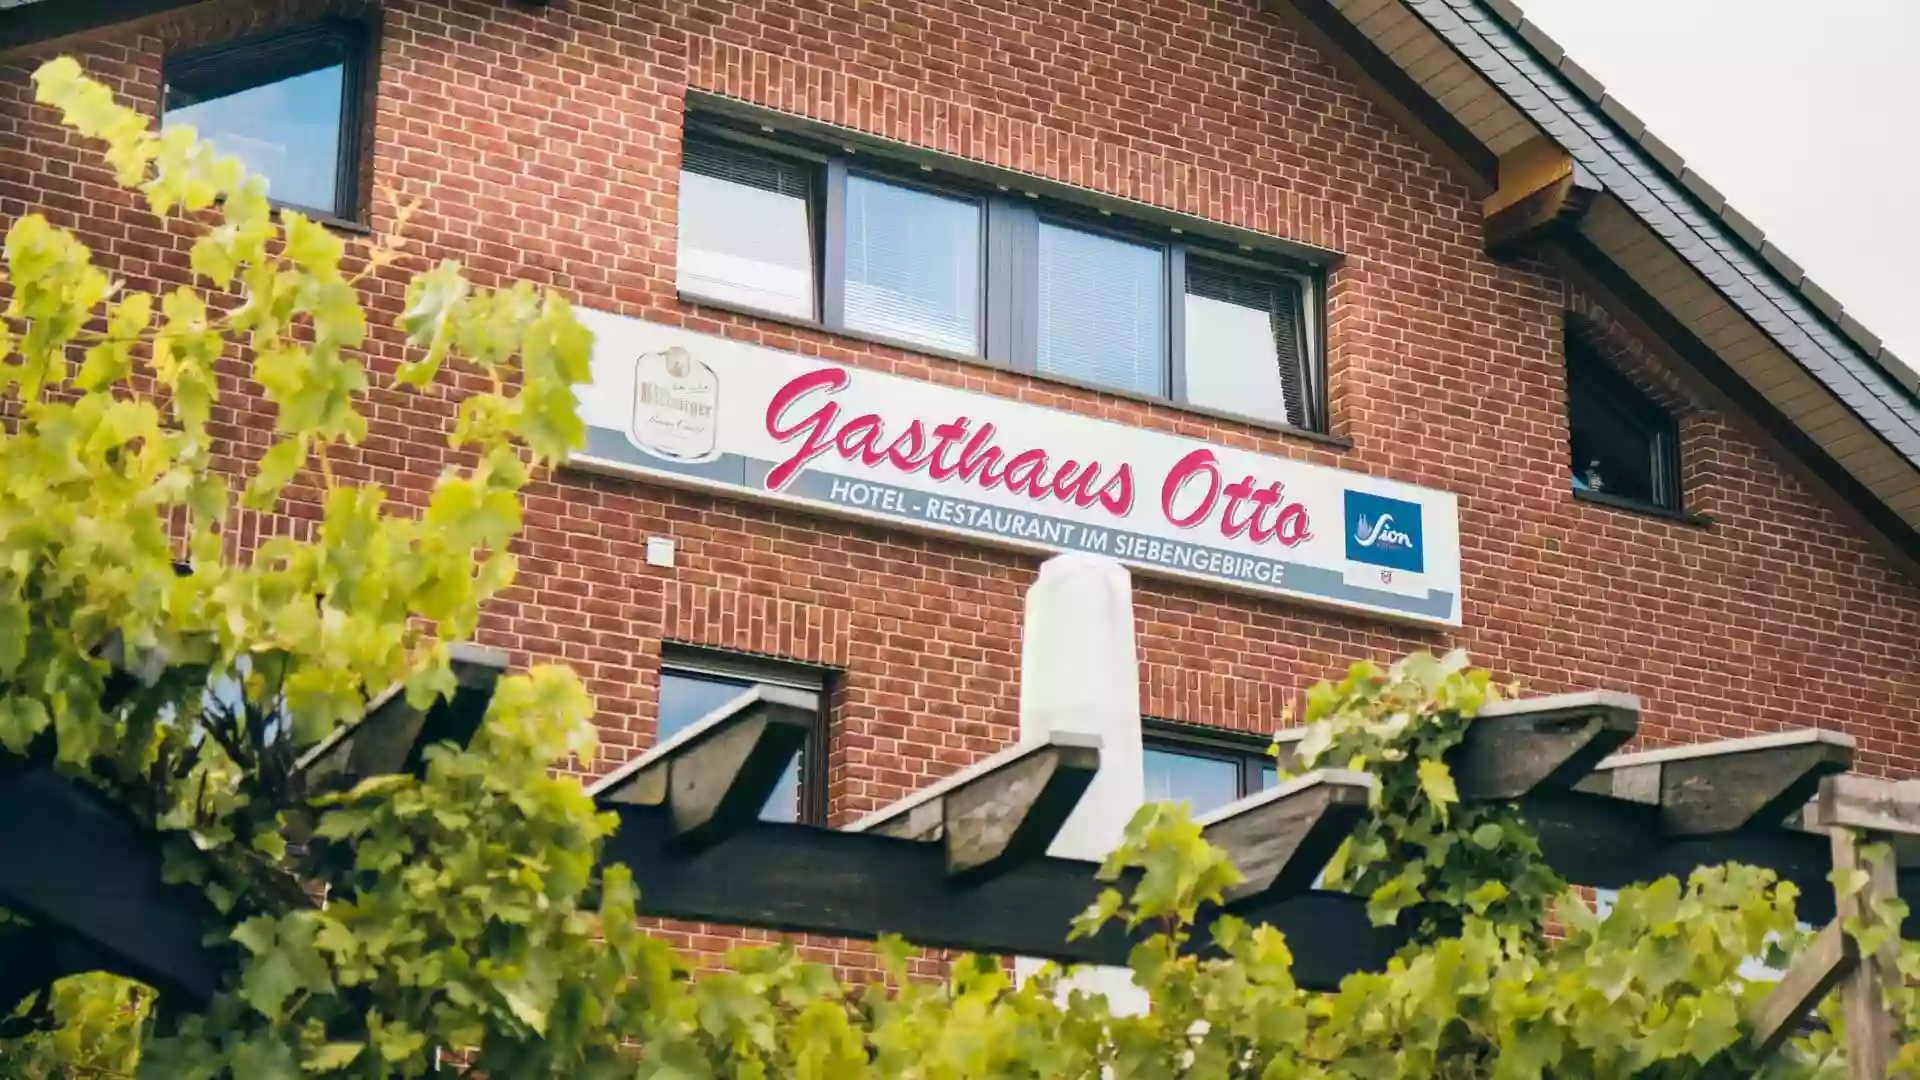 Hotel-Restaurant "Gasthaus Otto"